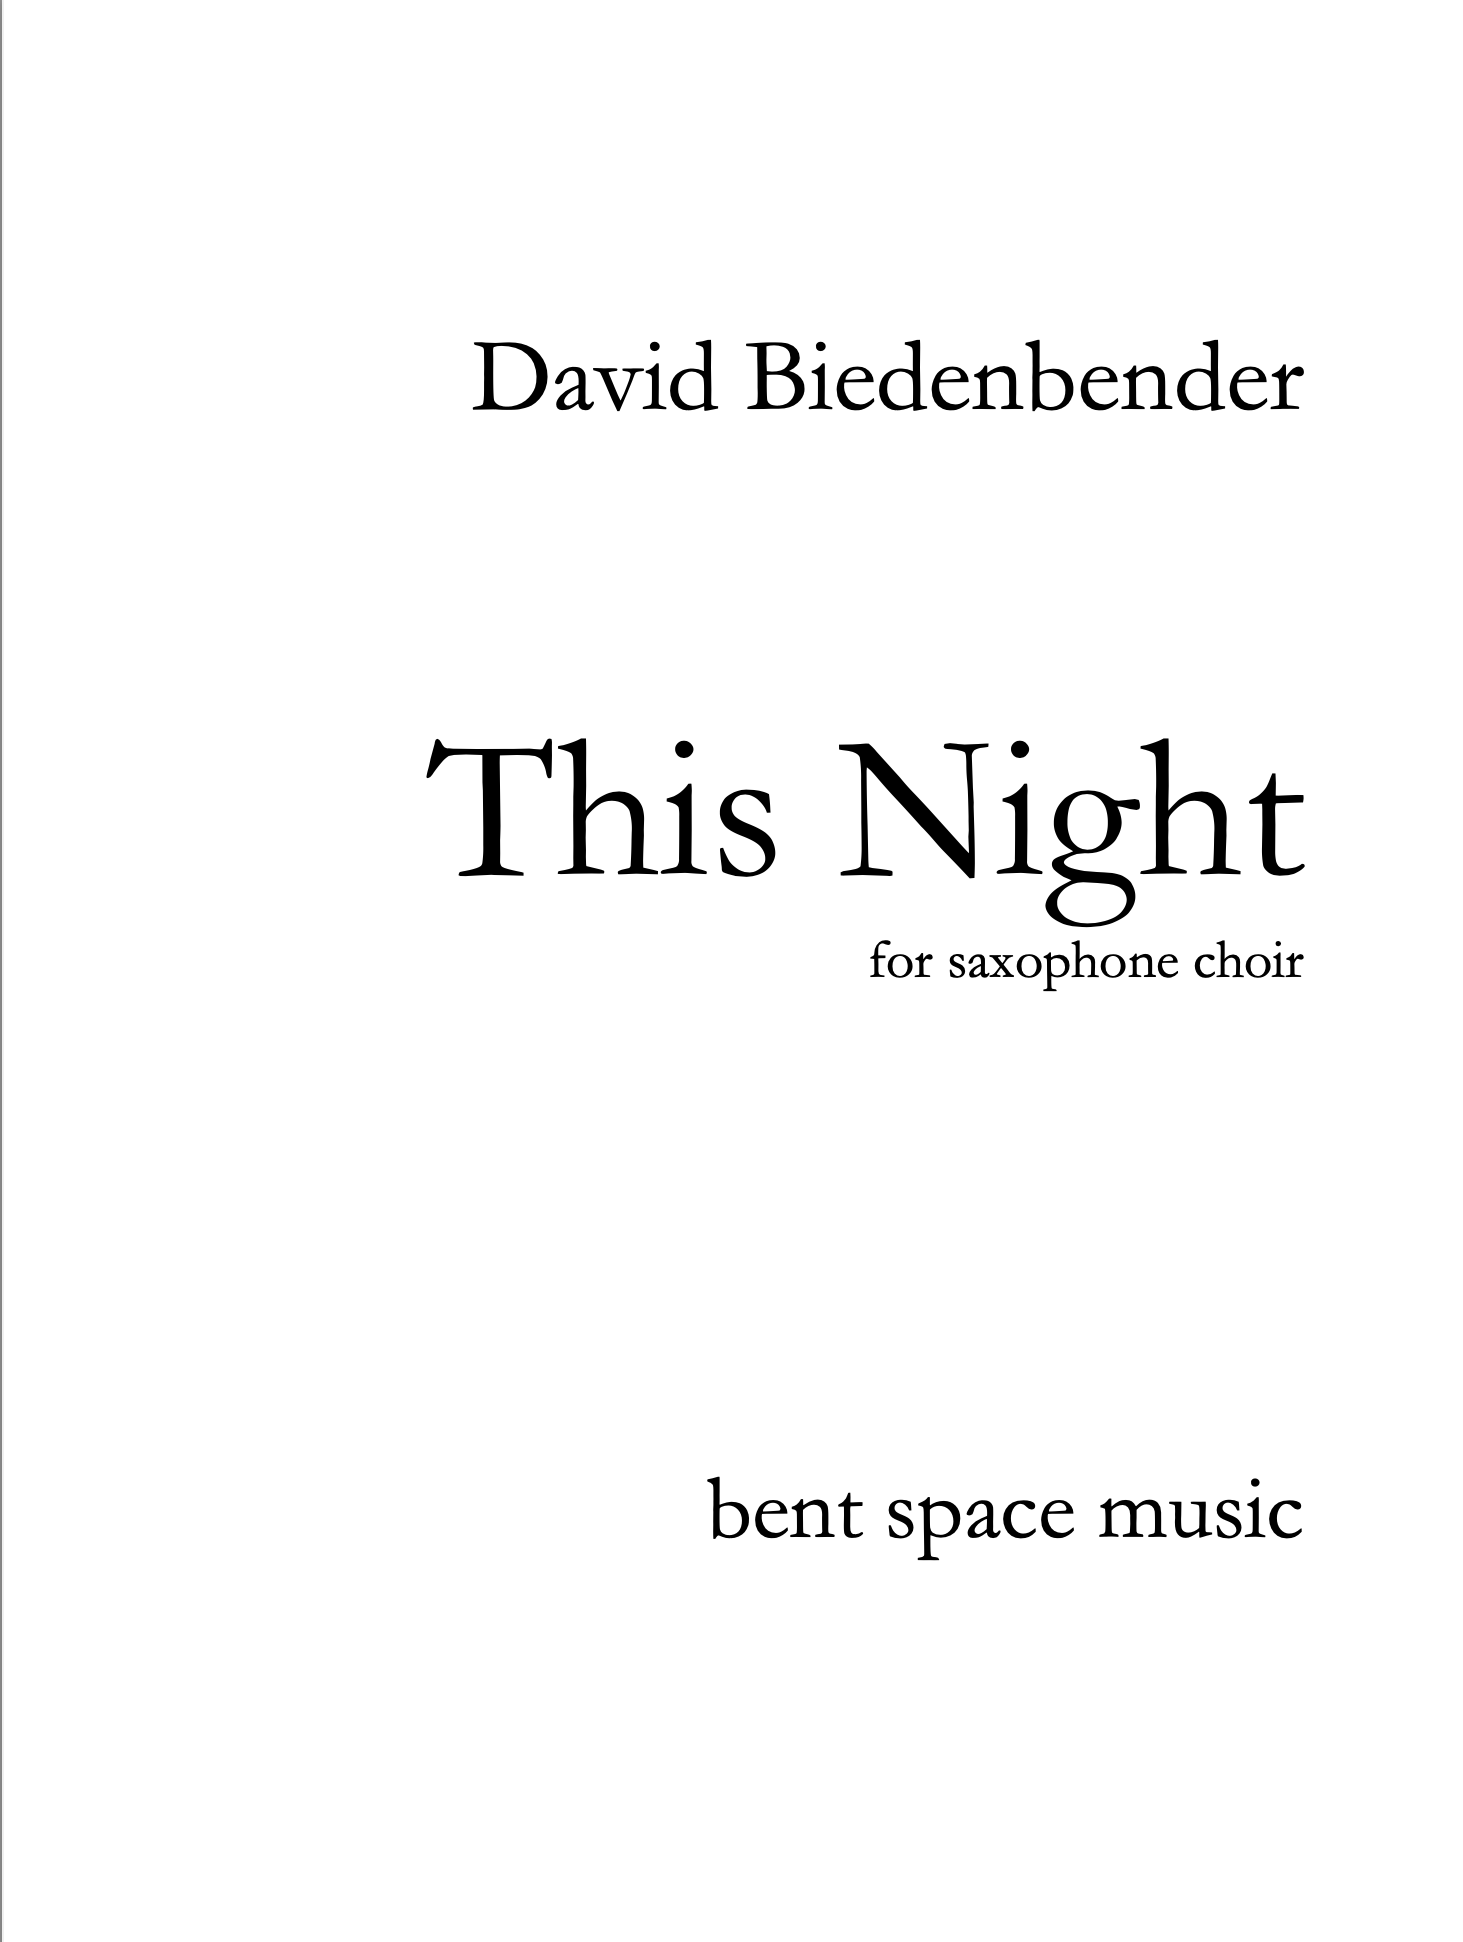 This Night (Saxophone Choir Version) by David Biedenbender